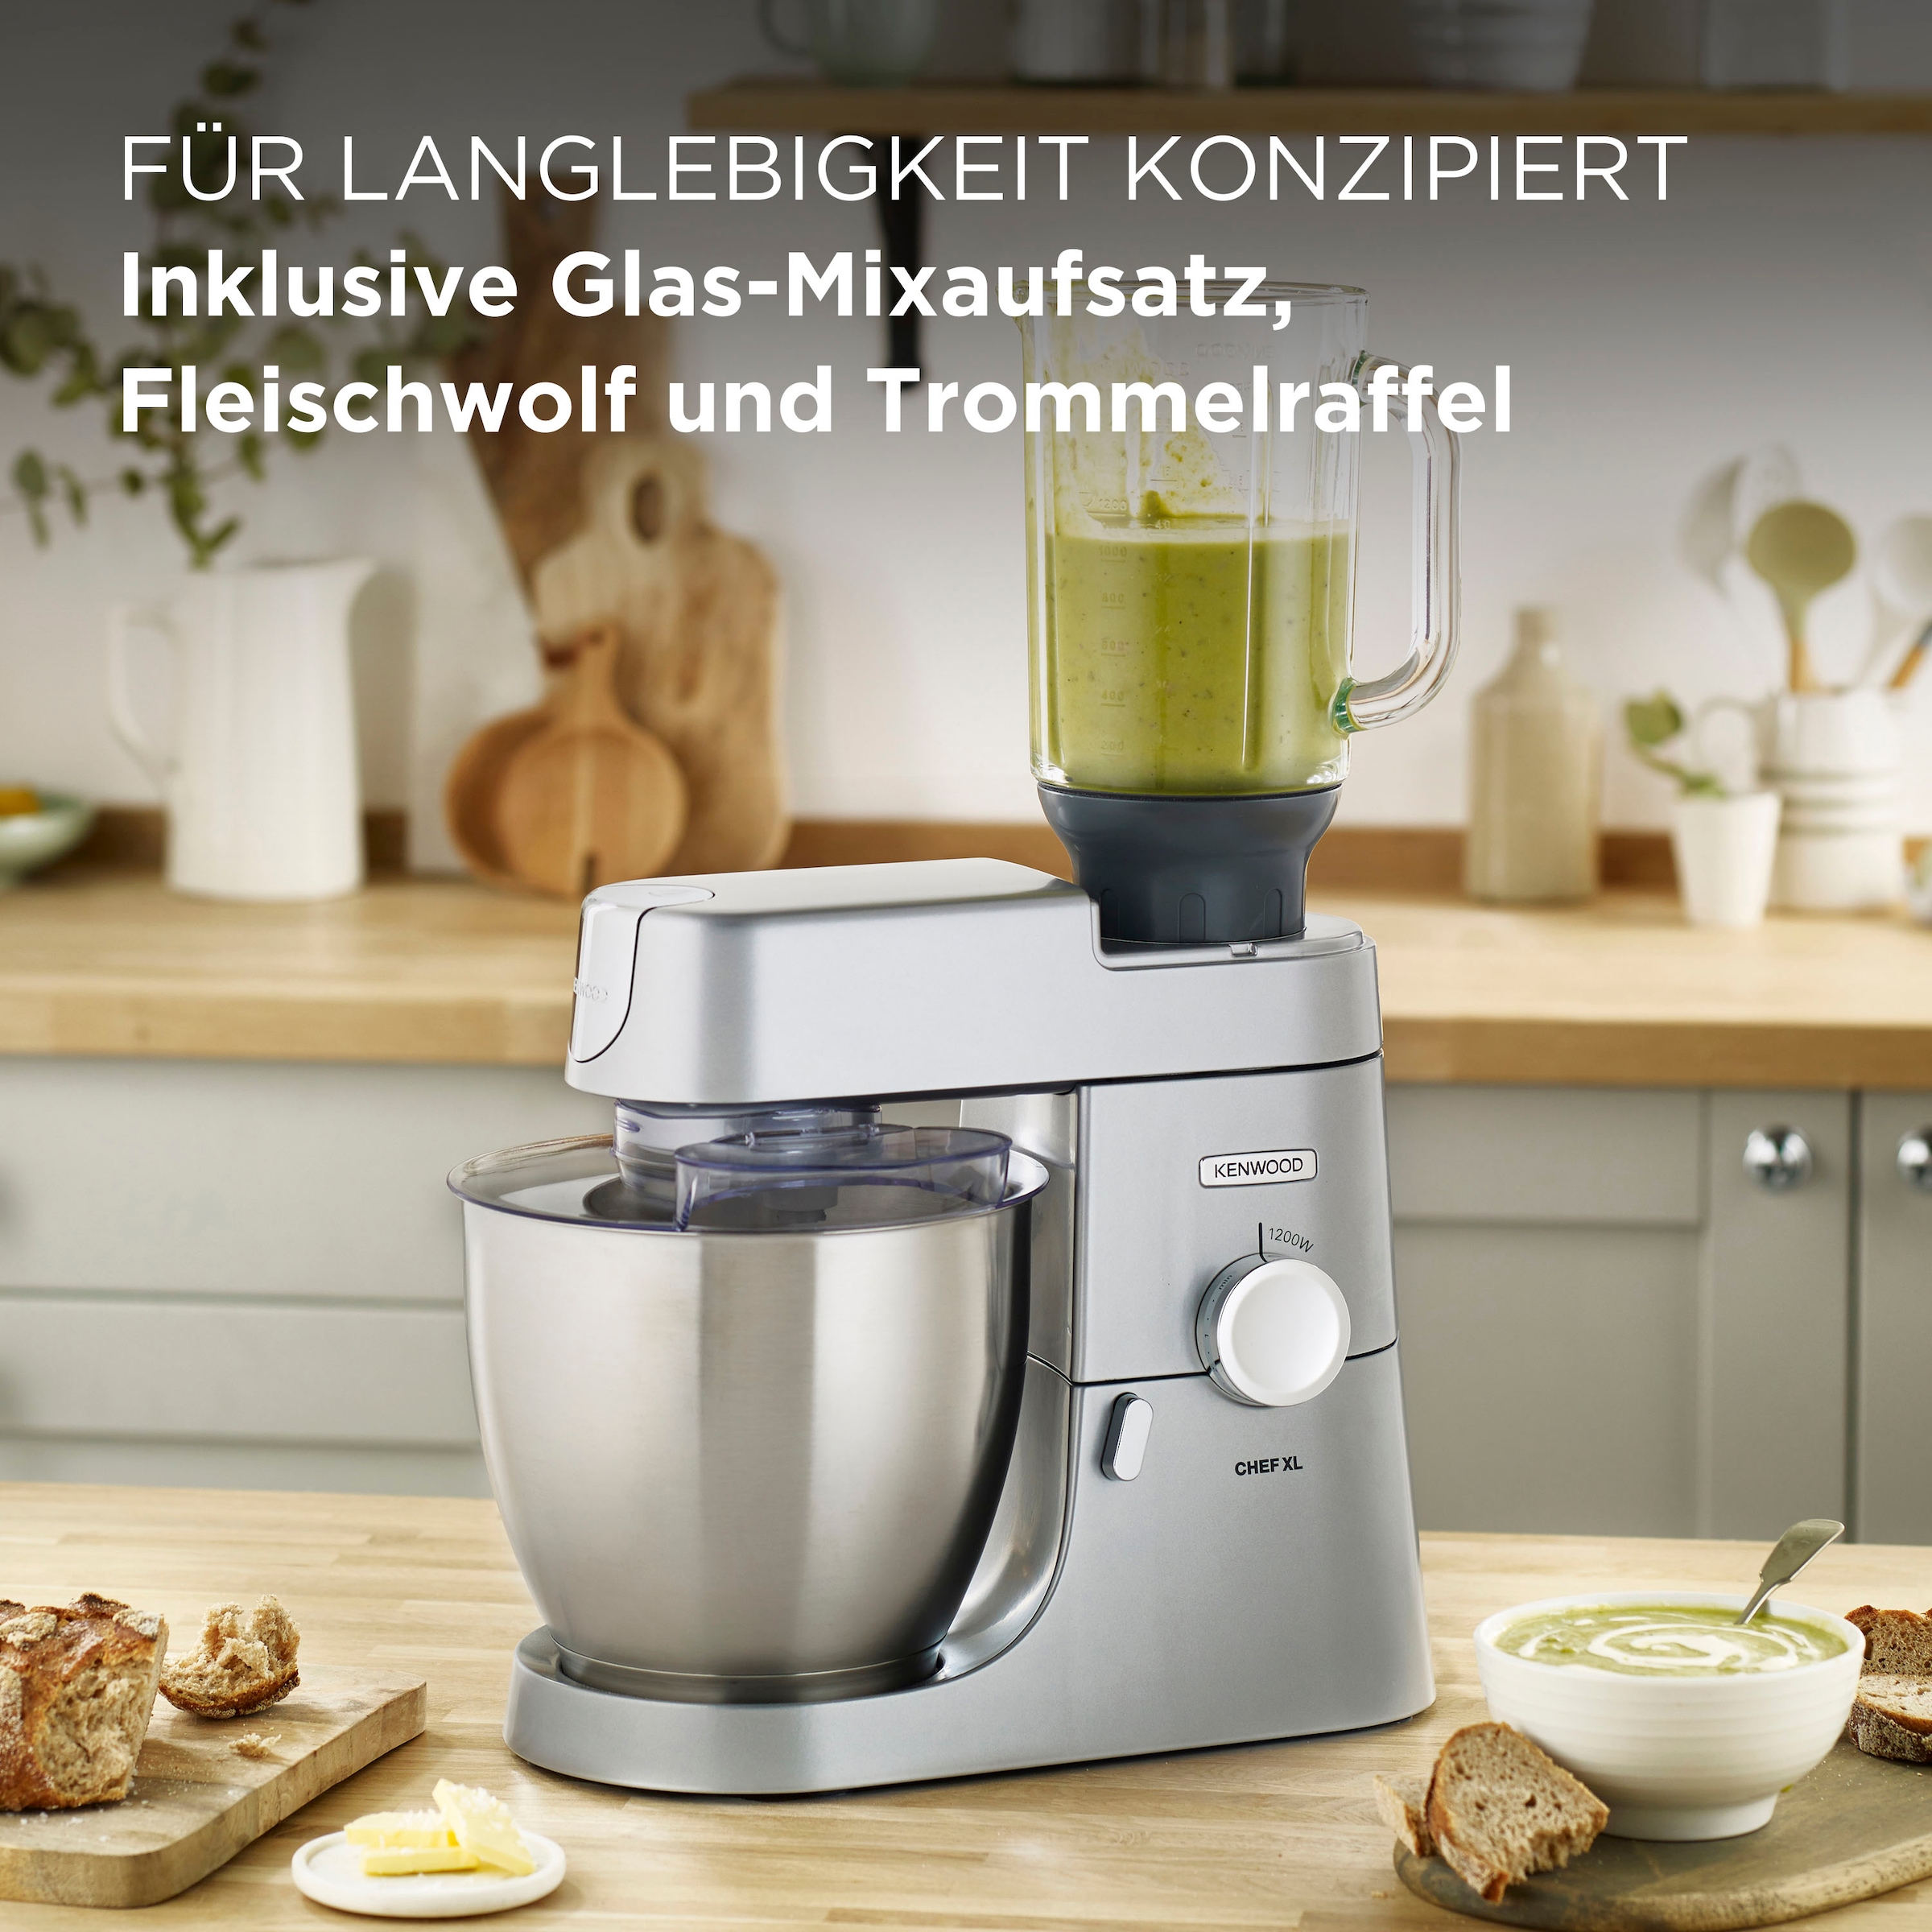 XL Fleischwolf Trommelraffel | 6,7 und l Schüssel, KVL4220S«, inkl. KENWOOD BAUR »Chef Mixaufsatz, Küchenmaschine